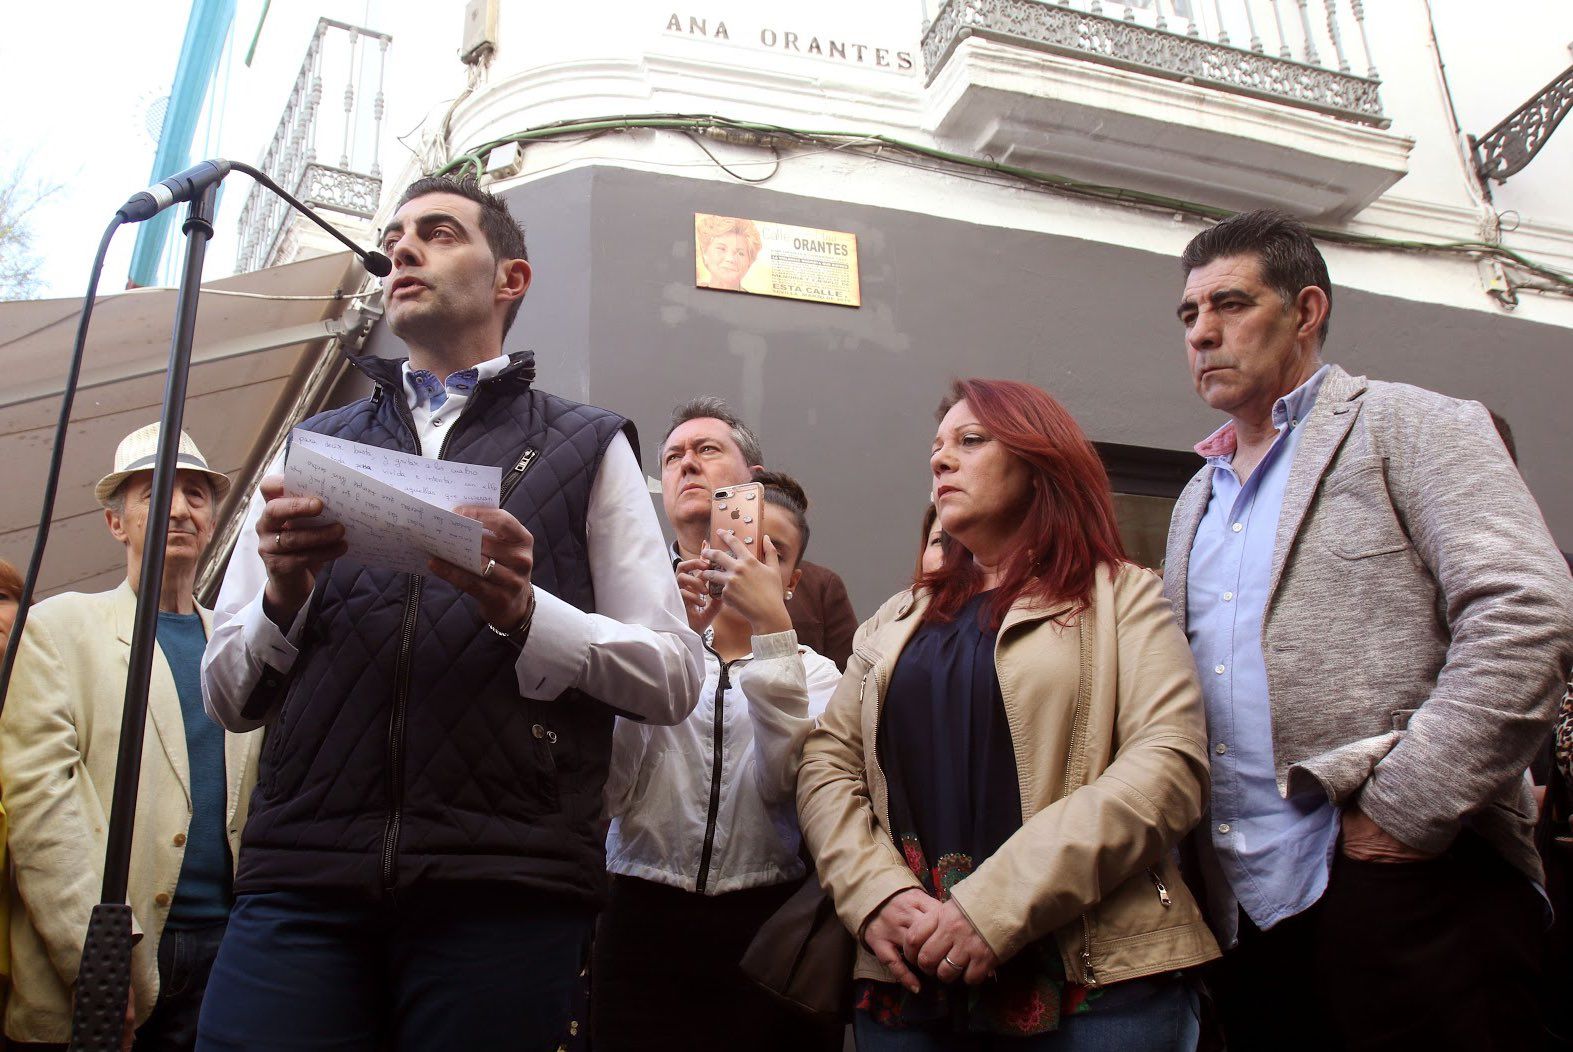 Reciente inauguración en Sevilla de la calle dedicada a Ana Orantes.